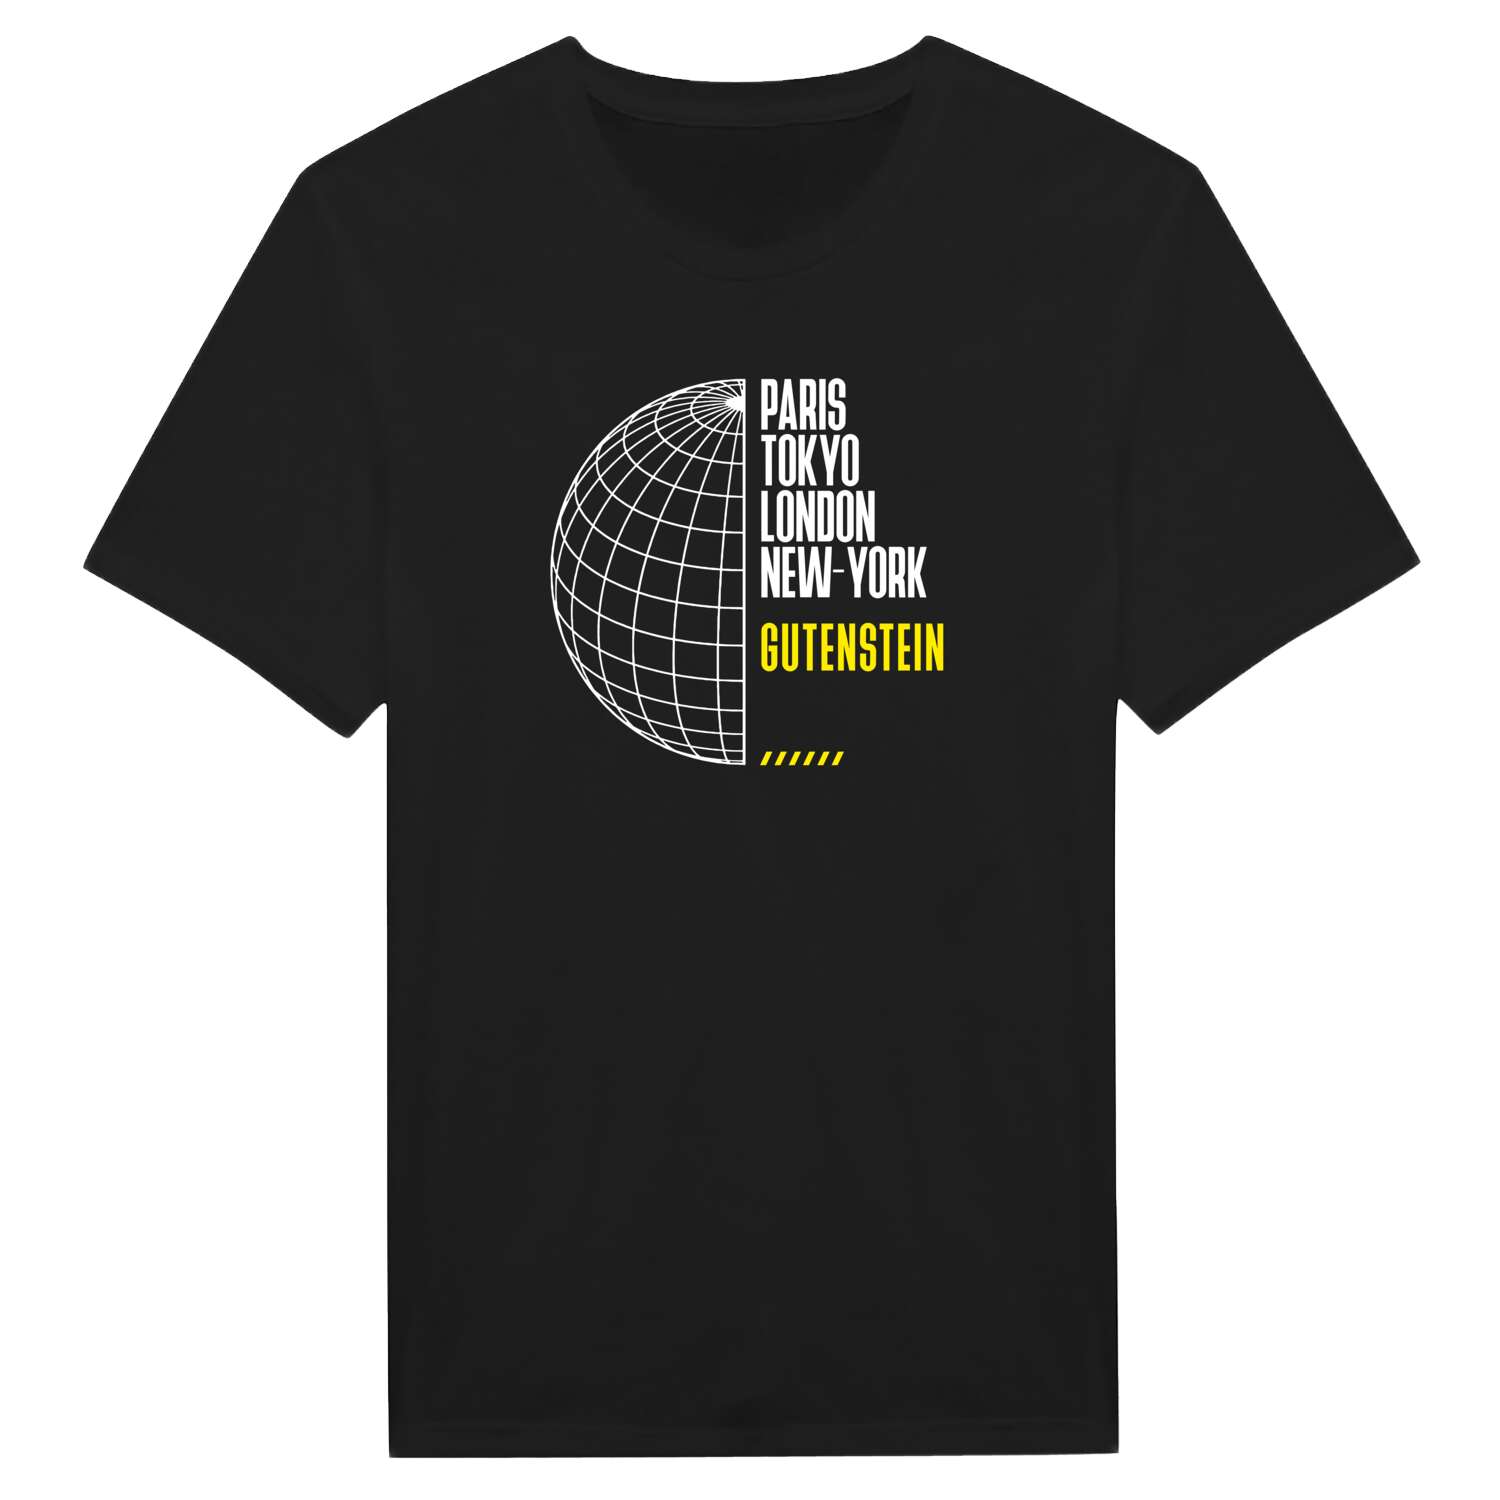 Gutenstein T-Shirt »Paris Tokyo London«